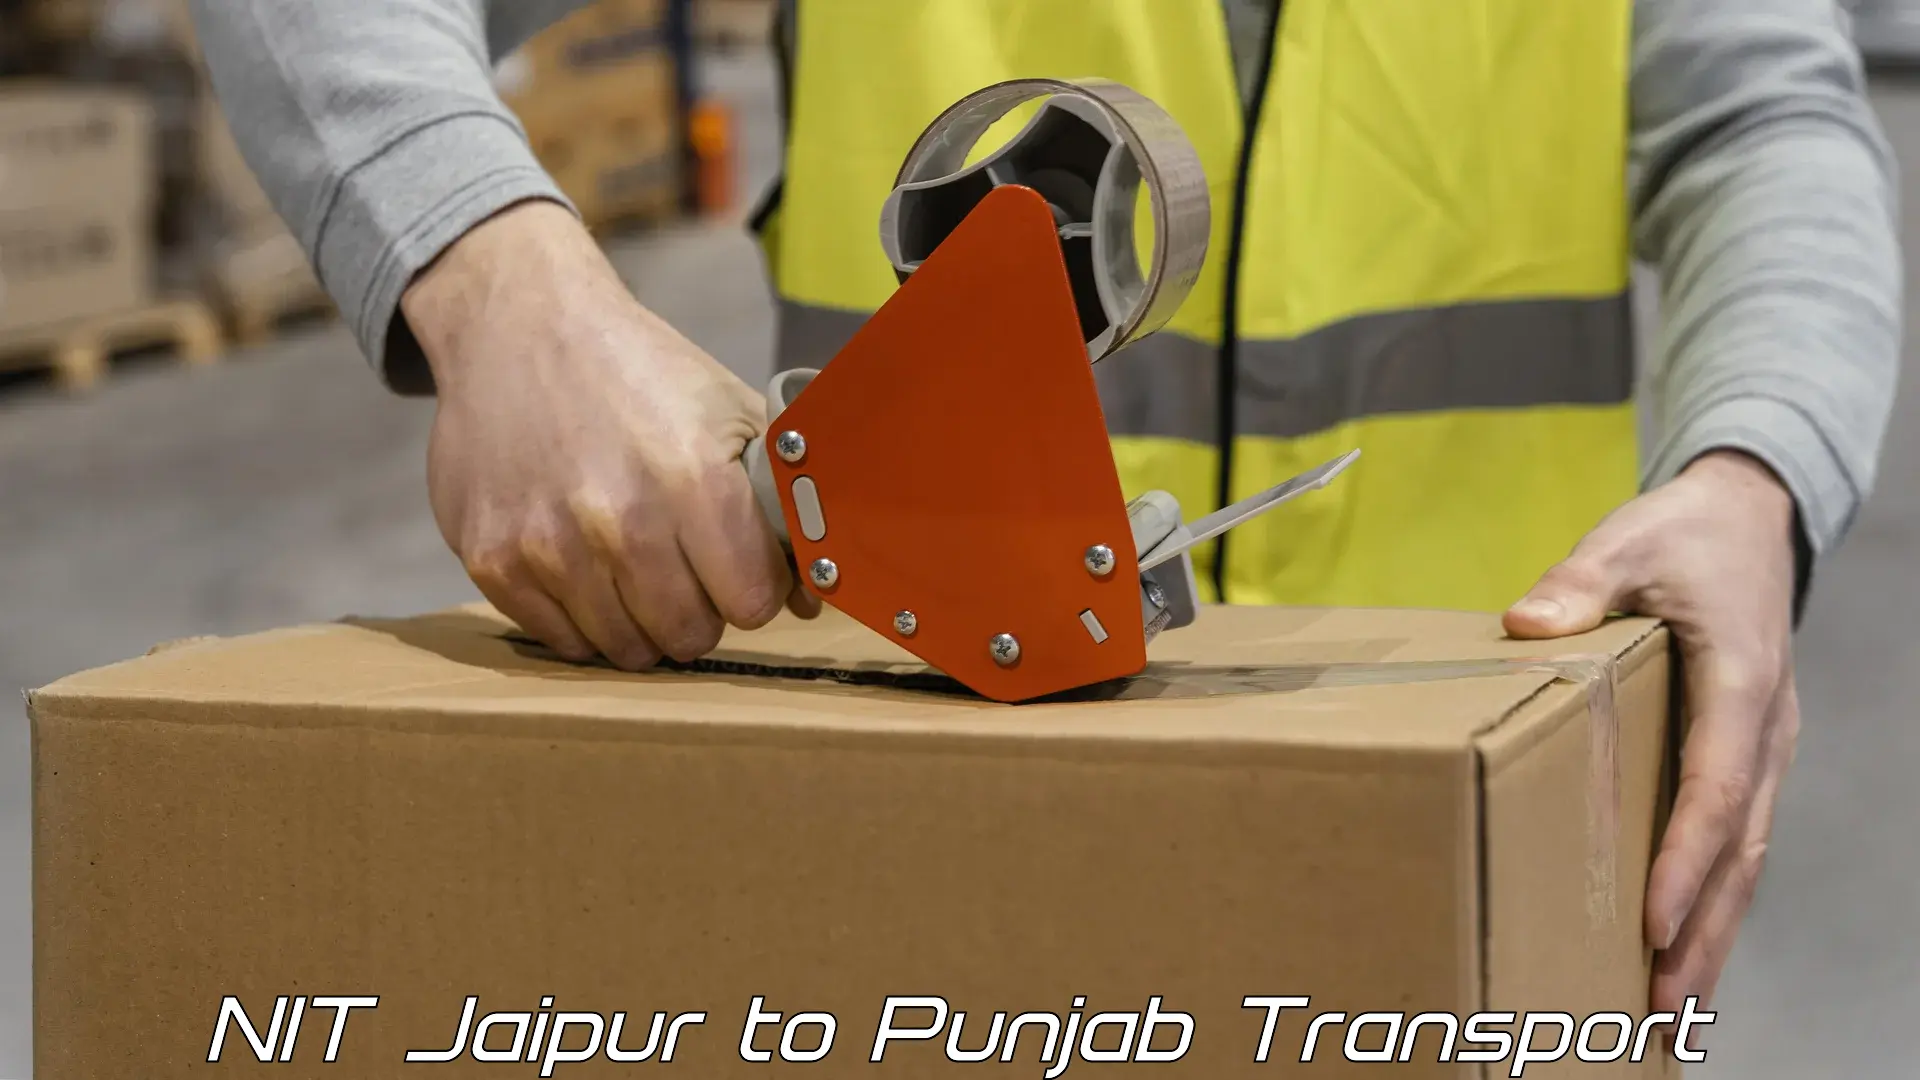 Cargo train transport services NIT Jaipur to Punjab